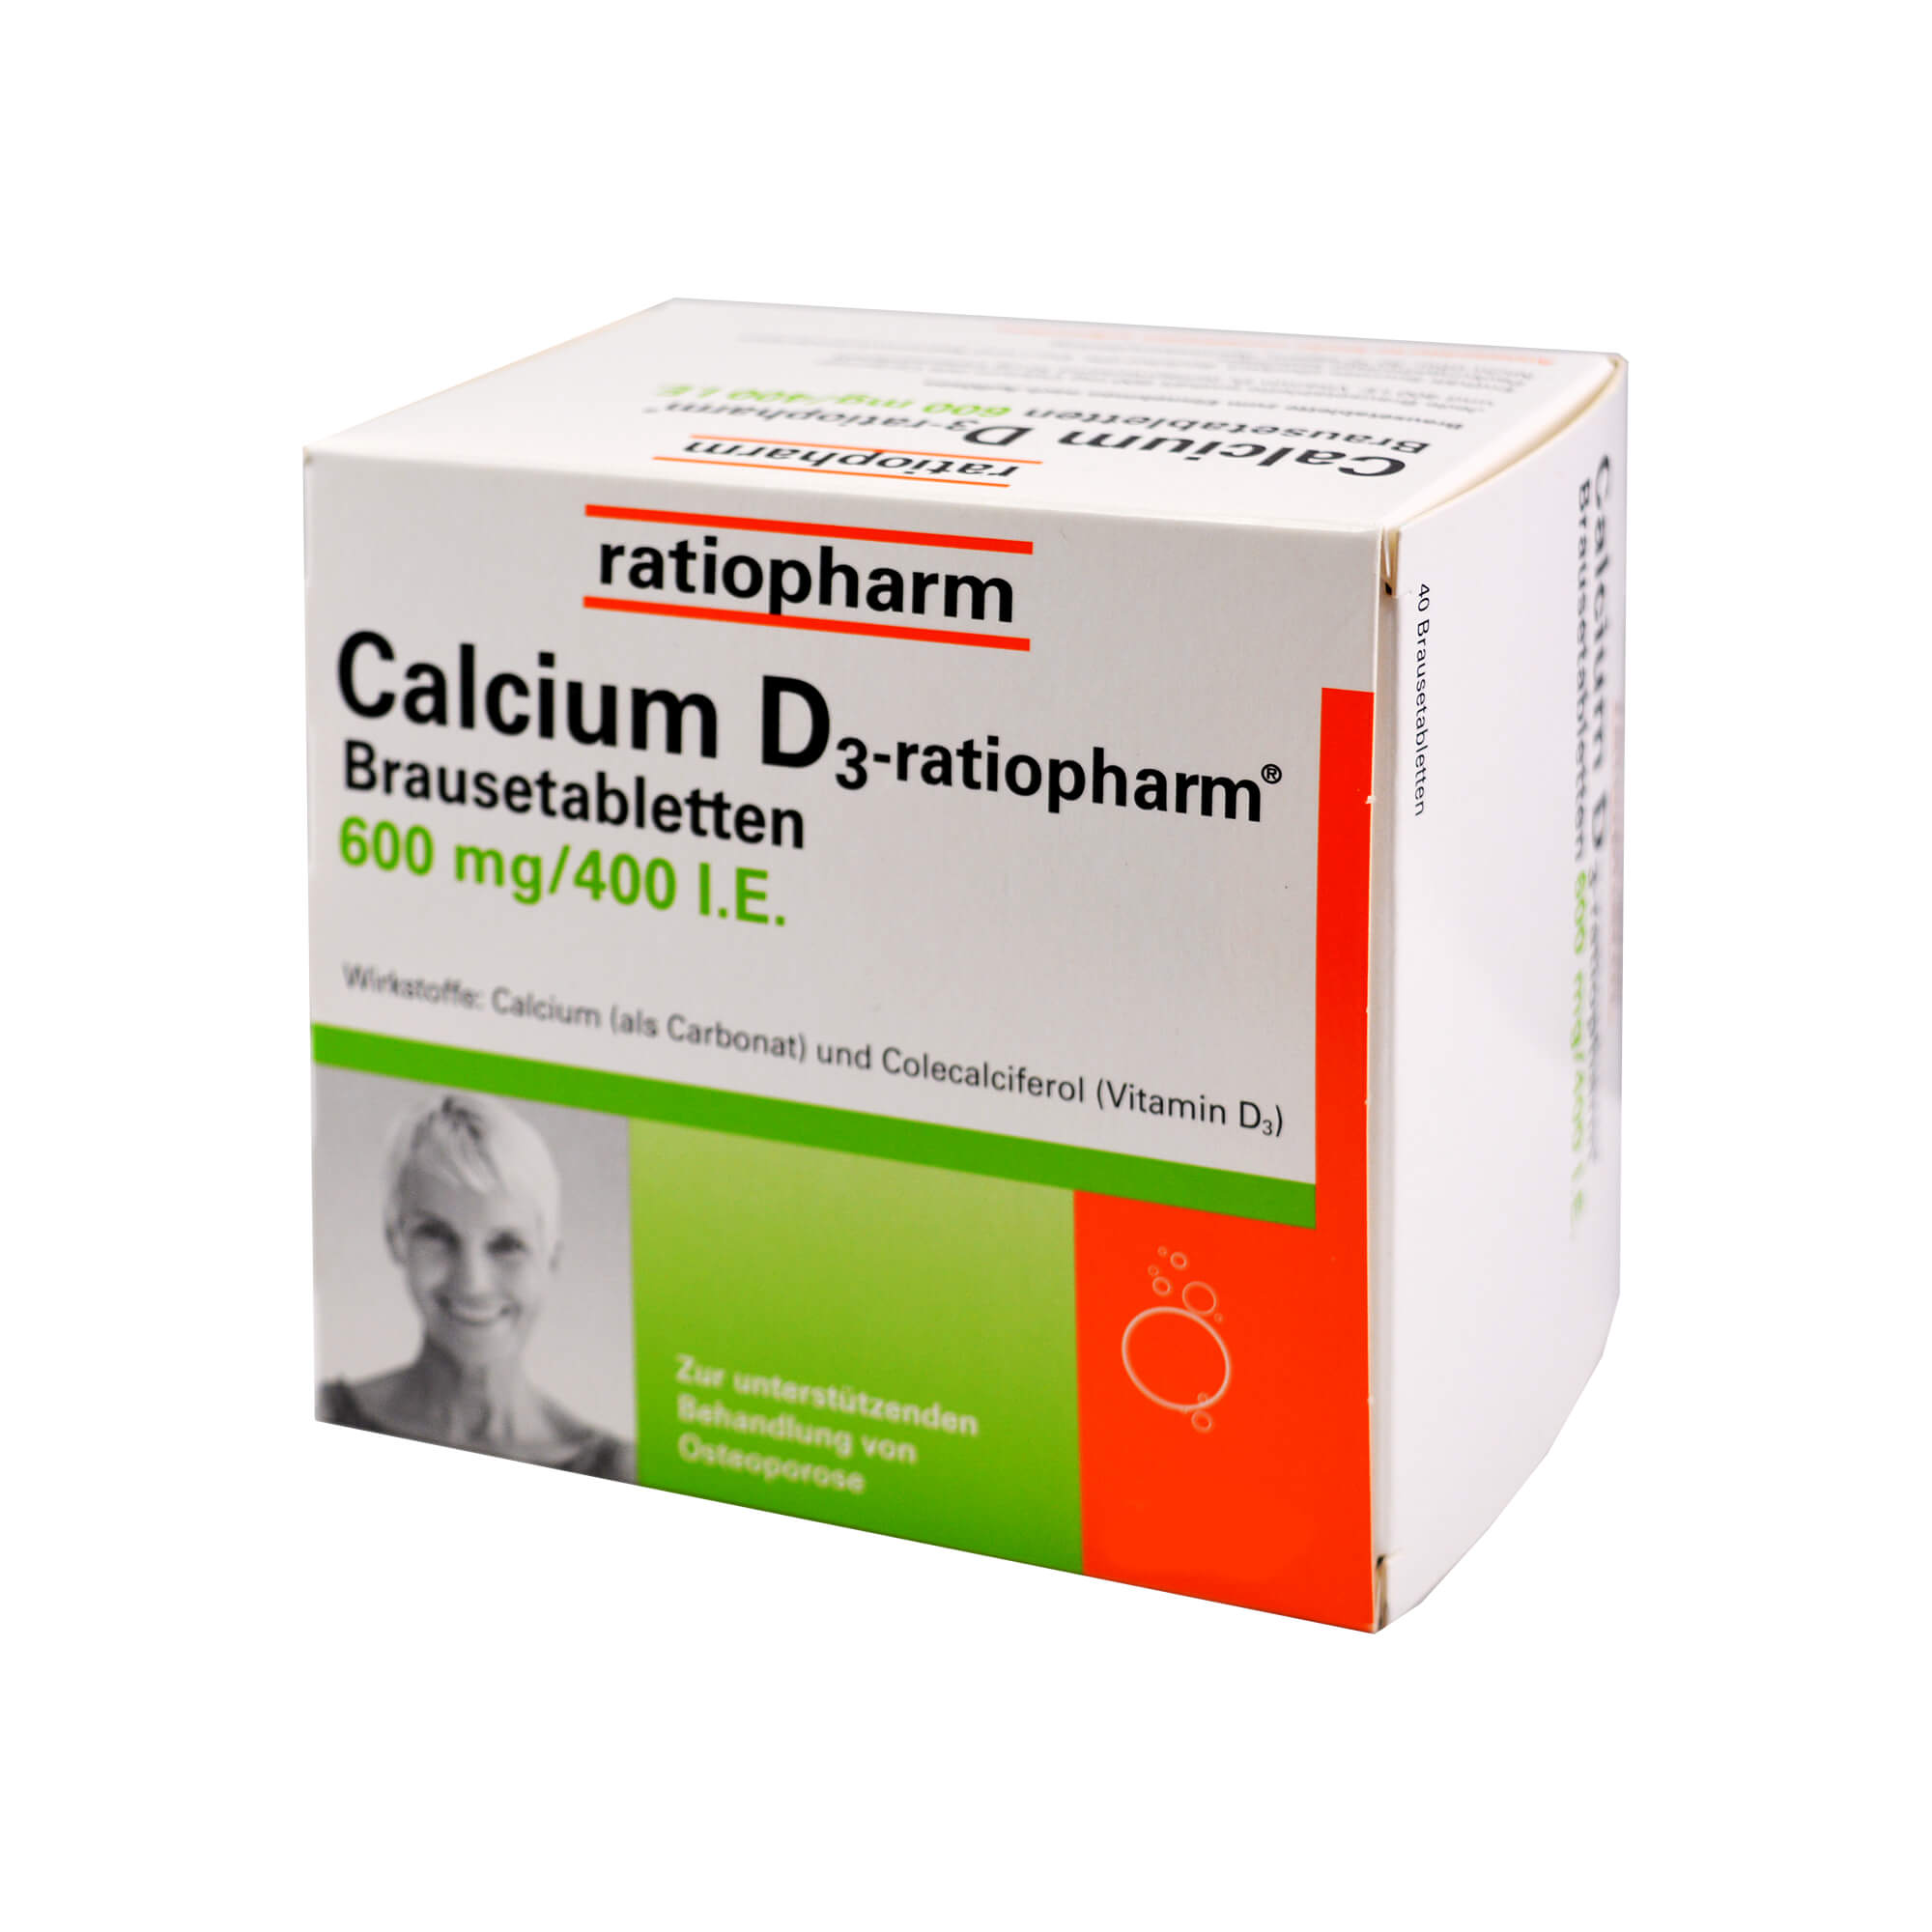 Bei nachgewiesenem Calcium- und Vitamin-D3-Mangel sowie zur unterstützenden Behandlung von Osteoporose.